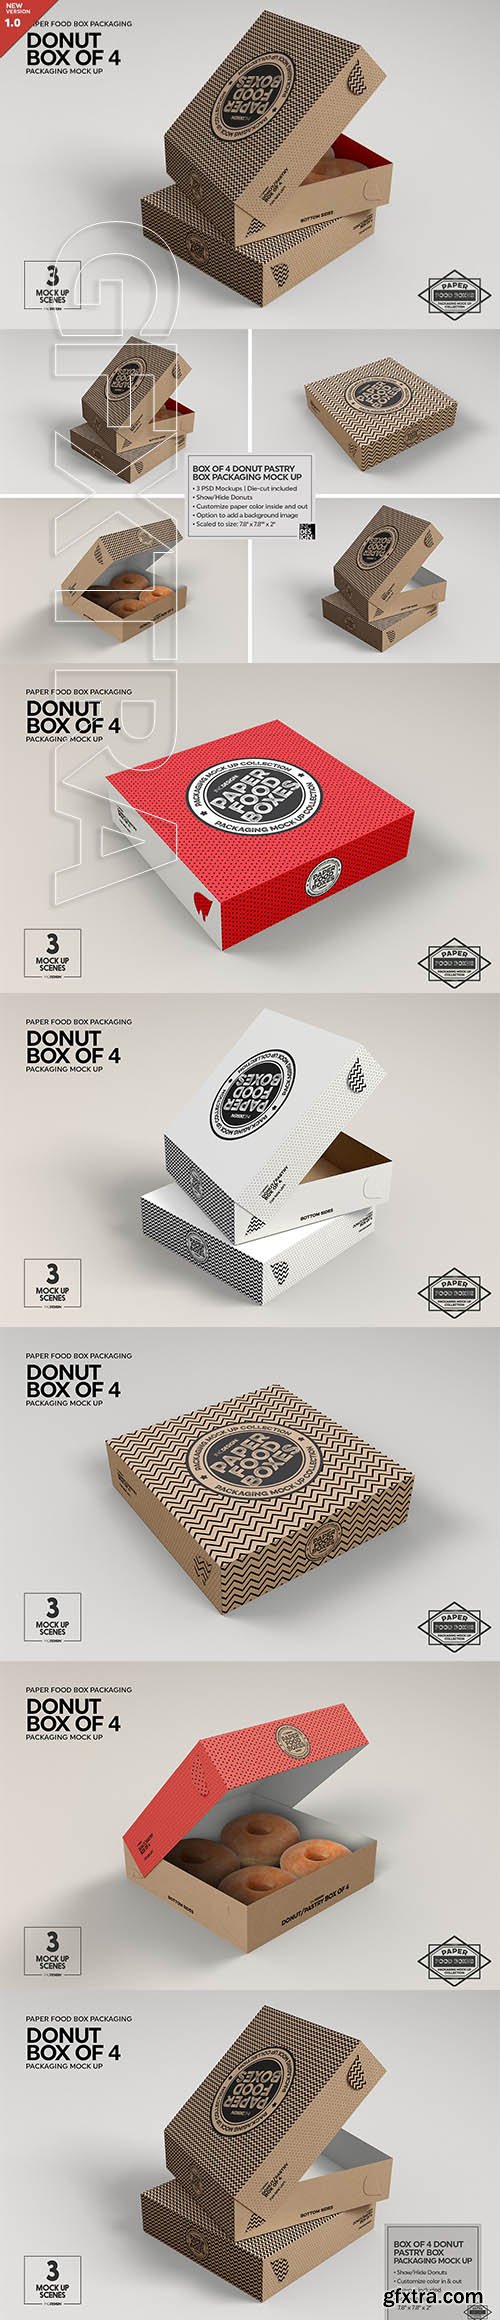 CreativeMarket - Box of Four Donut Pastry Box Mockup 2901914